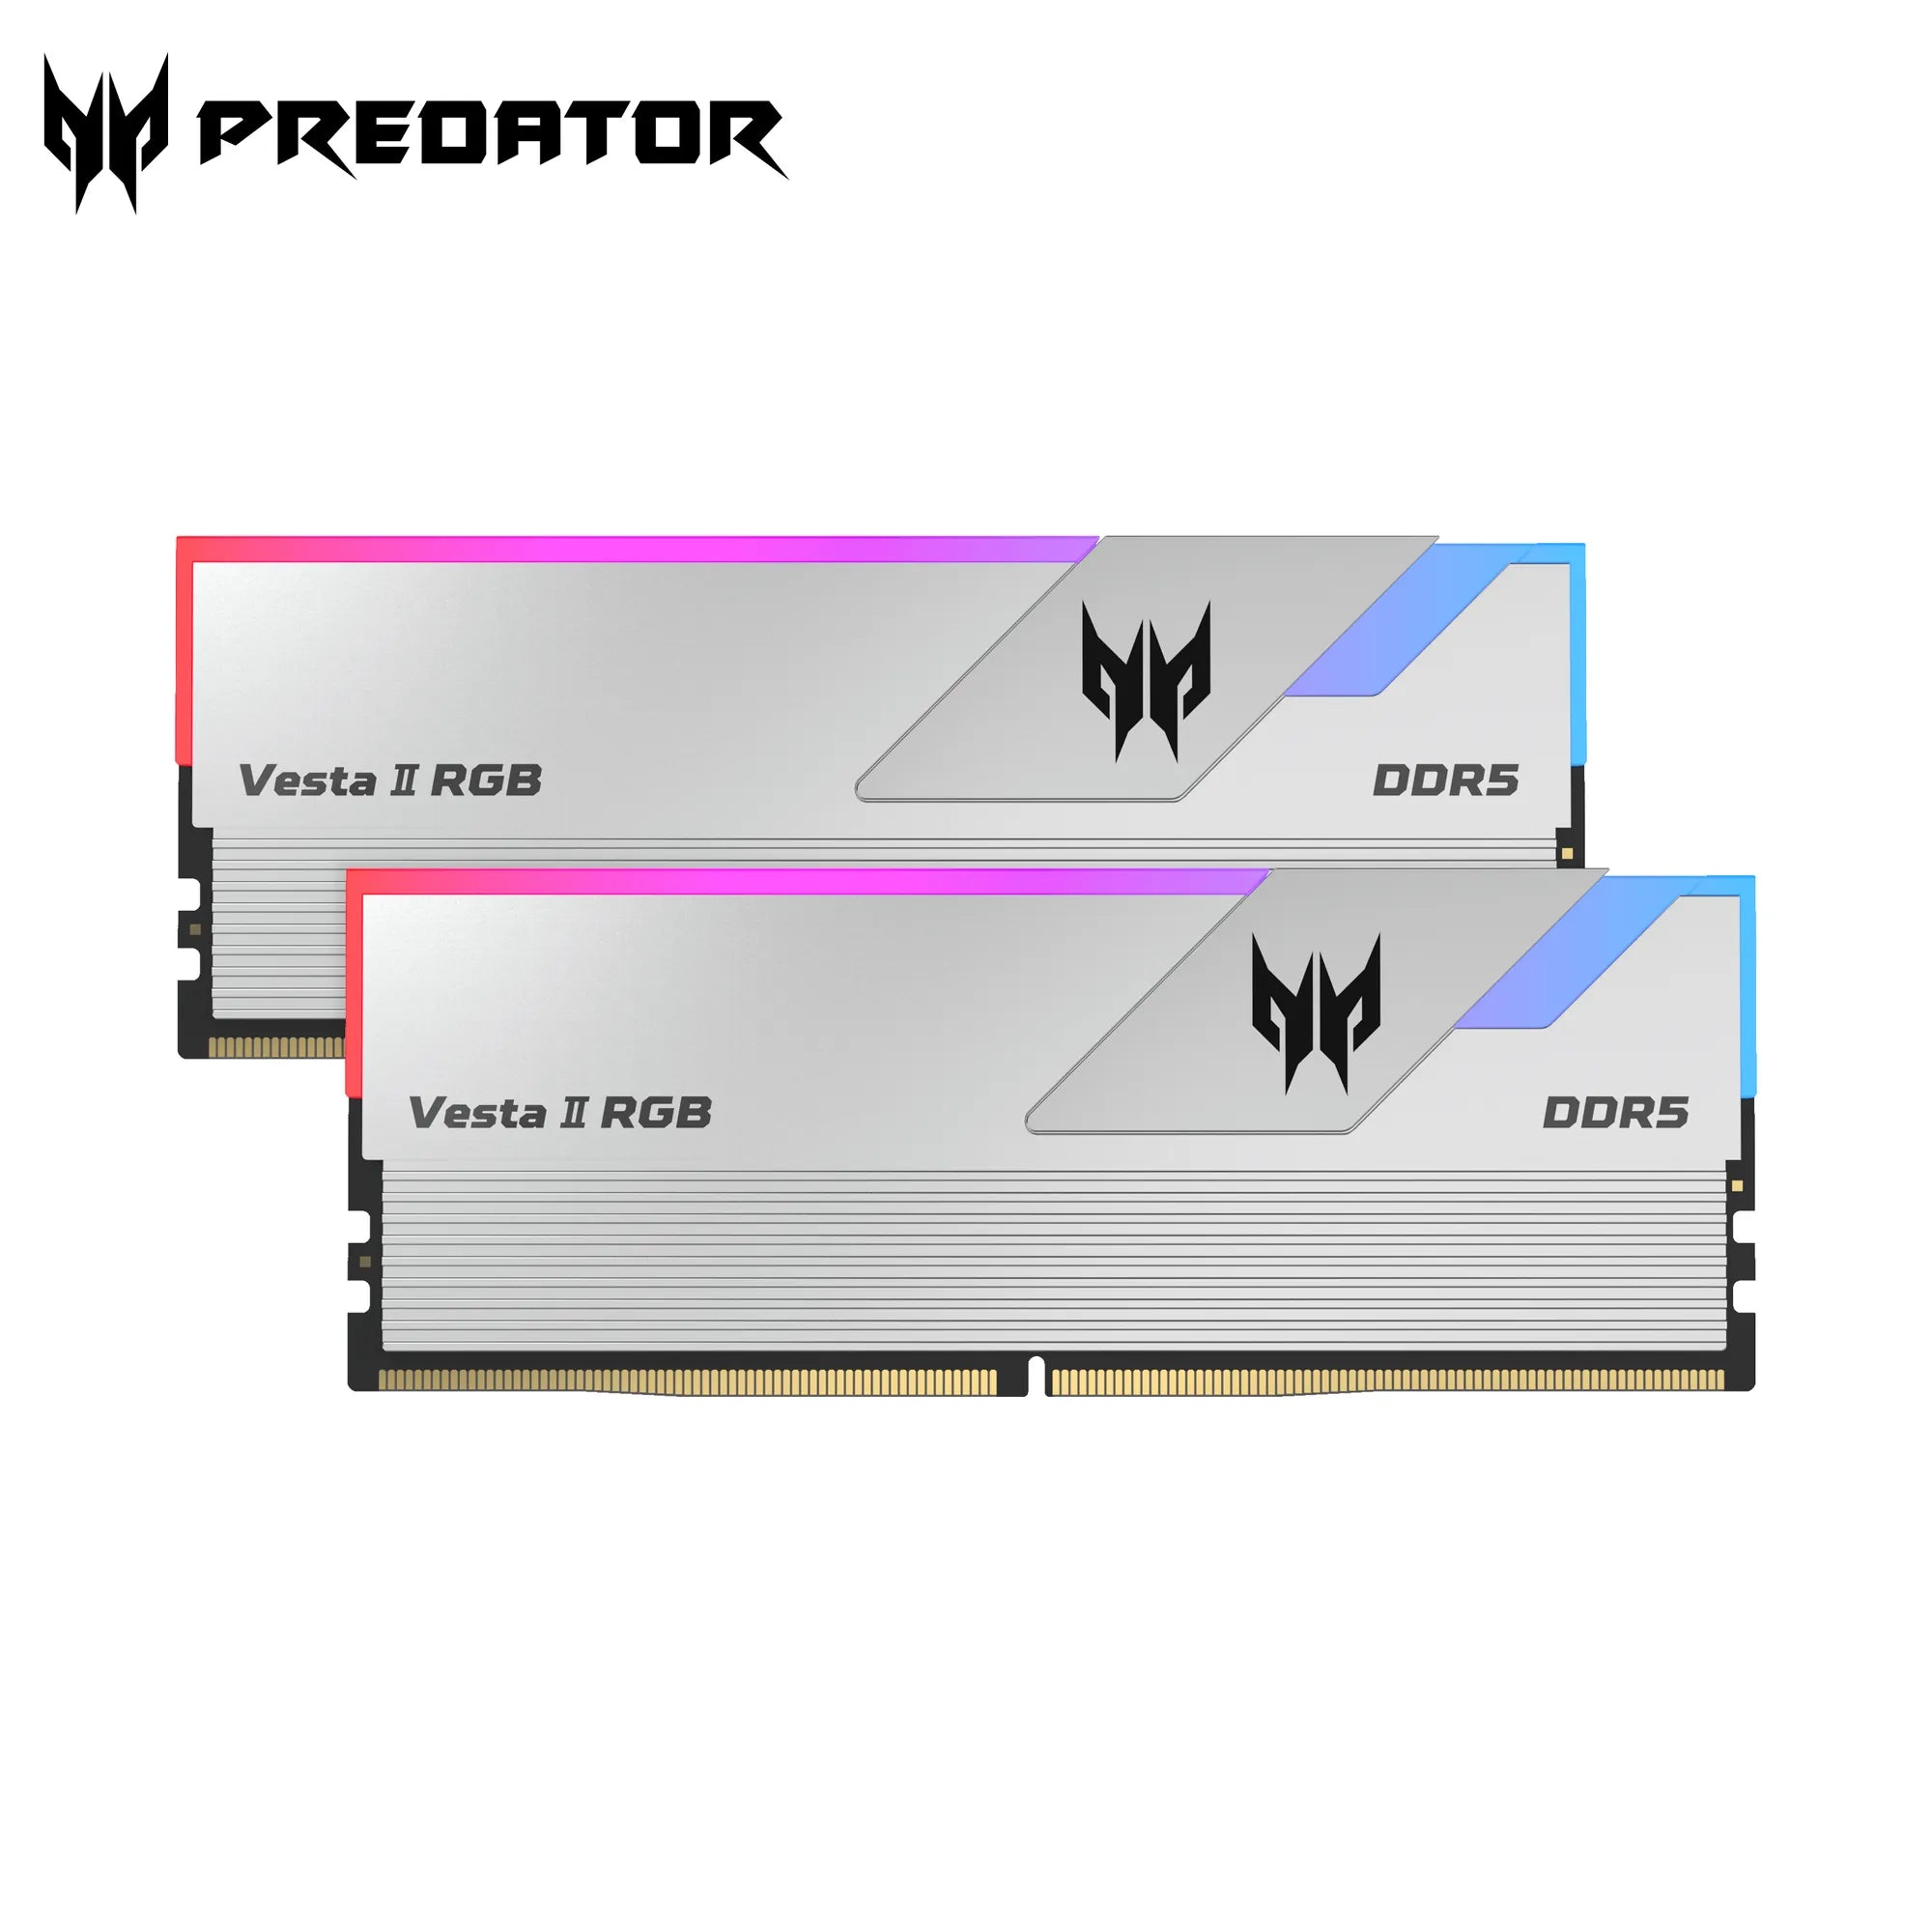 Predator Vesta II RGB